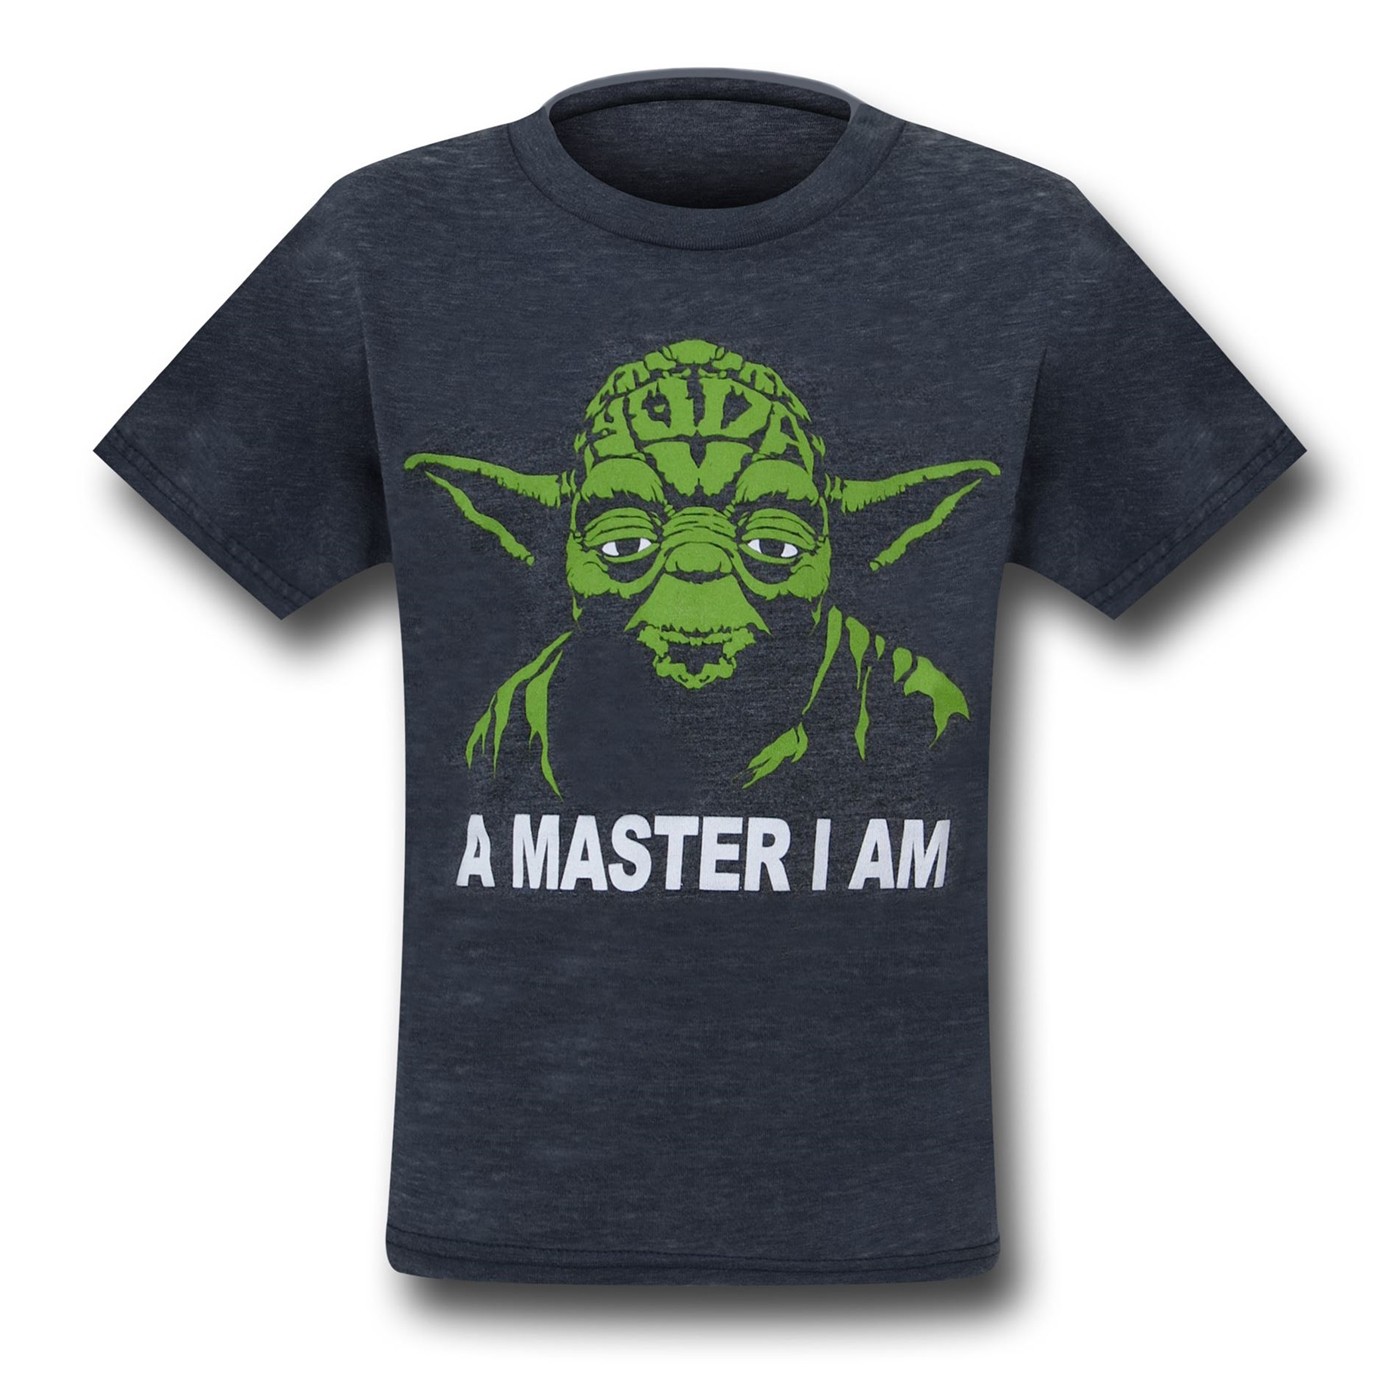 Star Wars Yoda Master I Am Kids T-Shirt